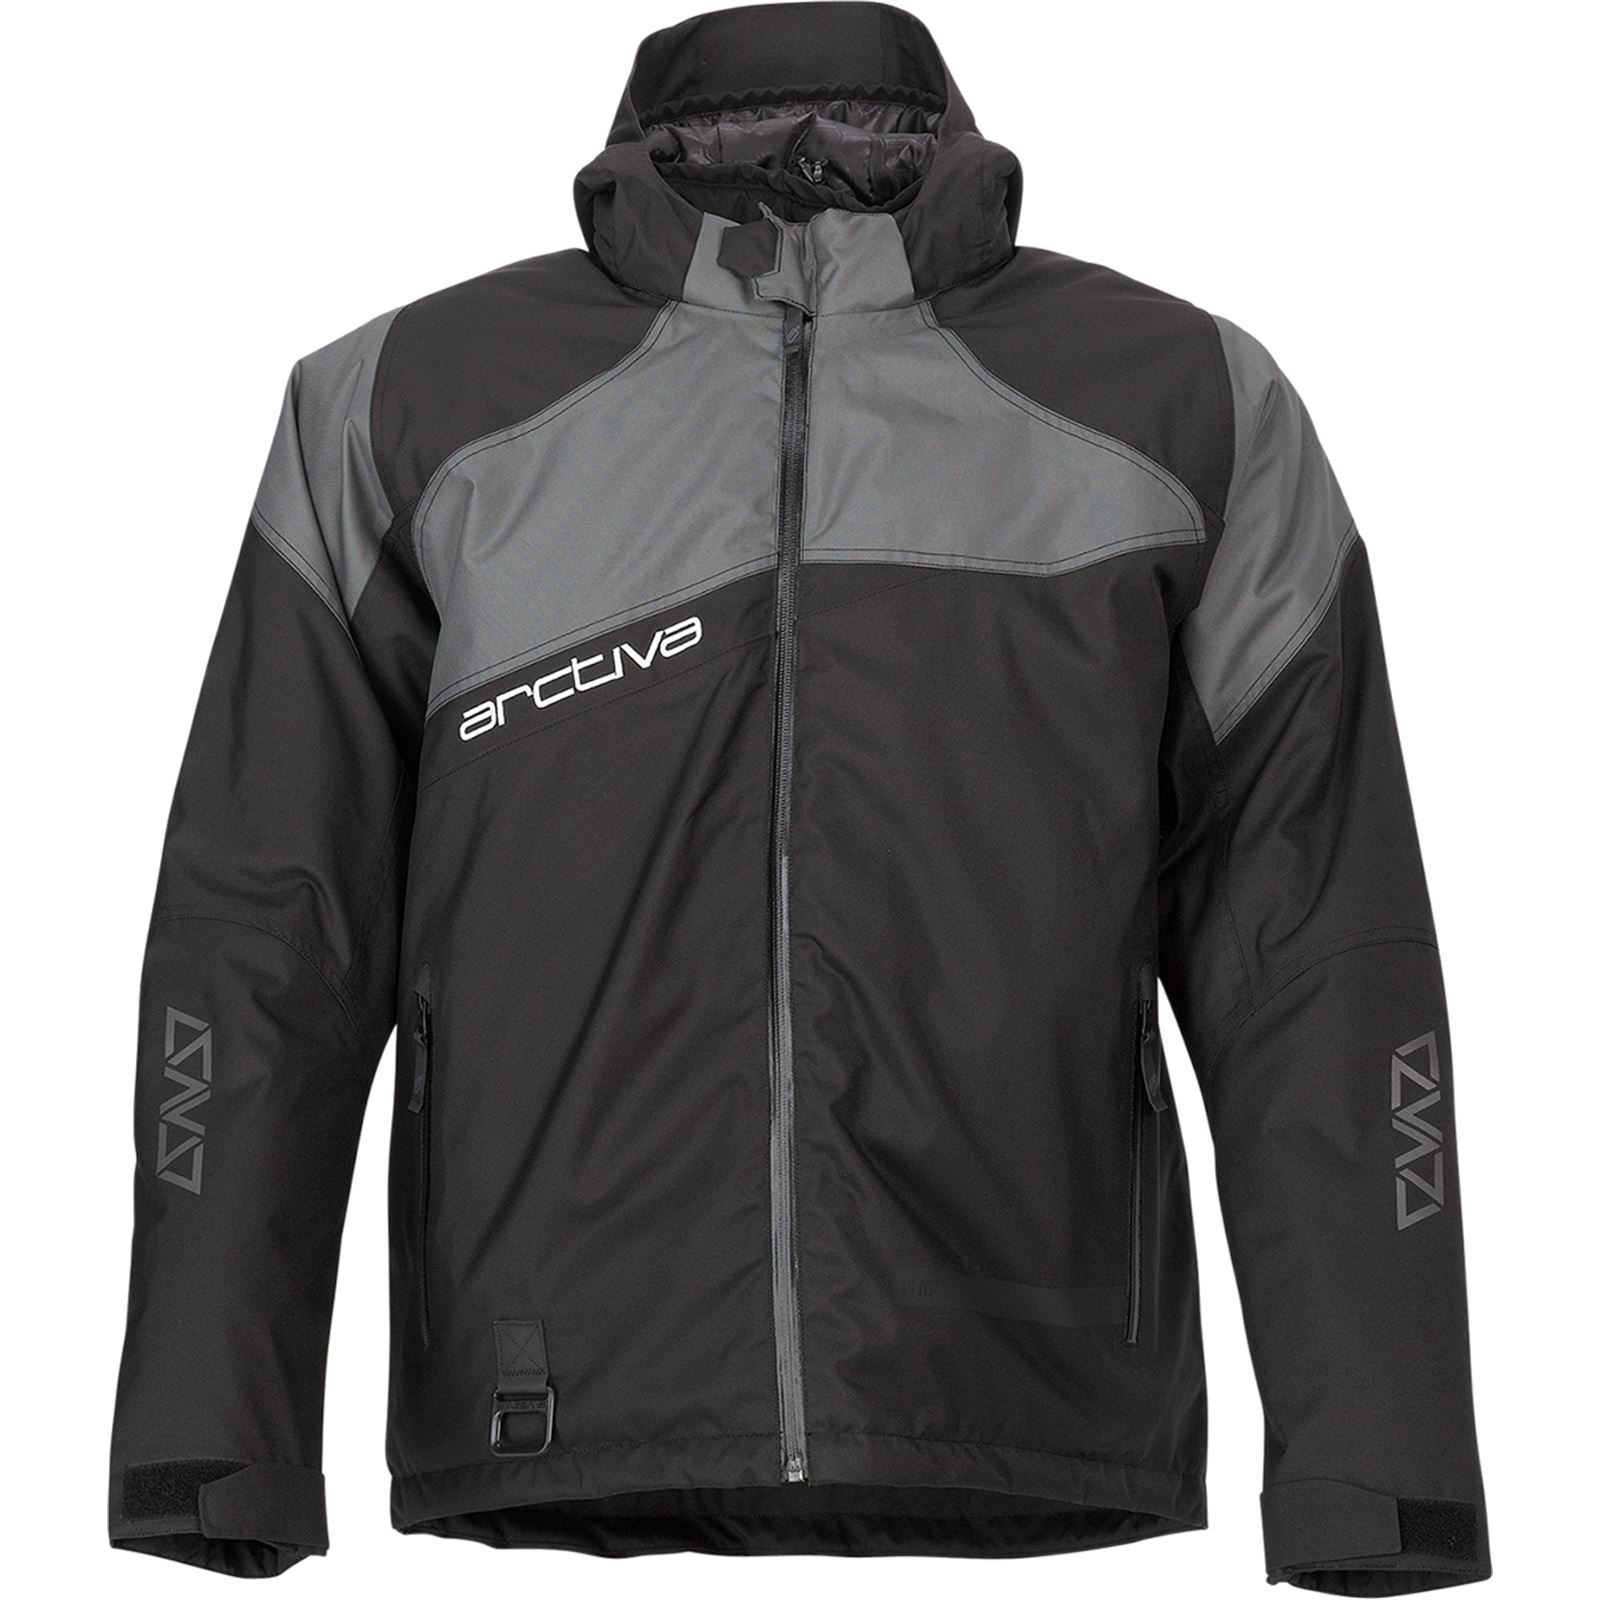 Arctiva Pivot 5 Hooded Jacket - Black/Gray